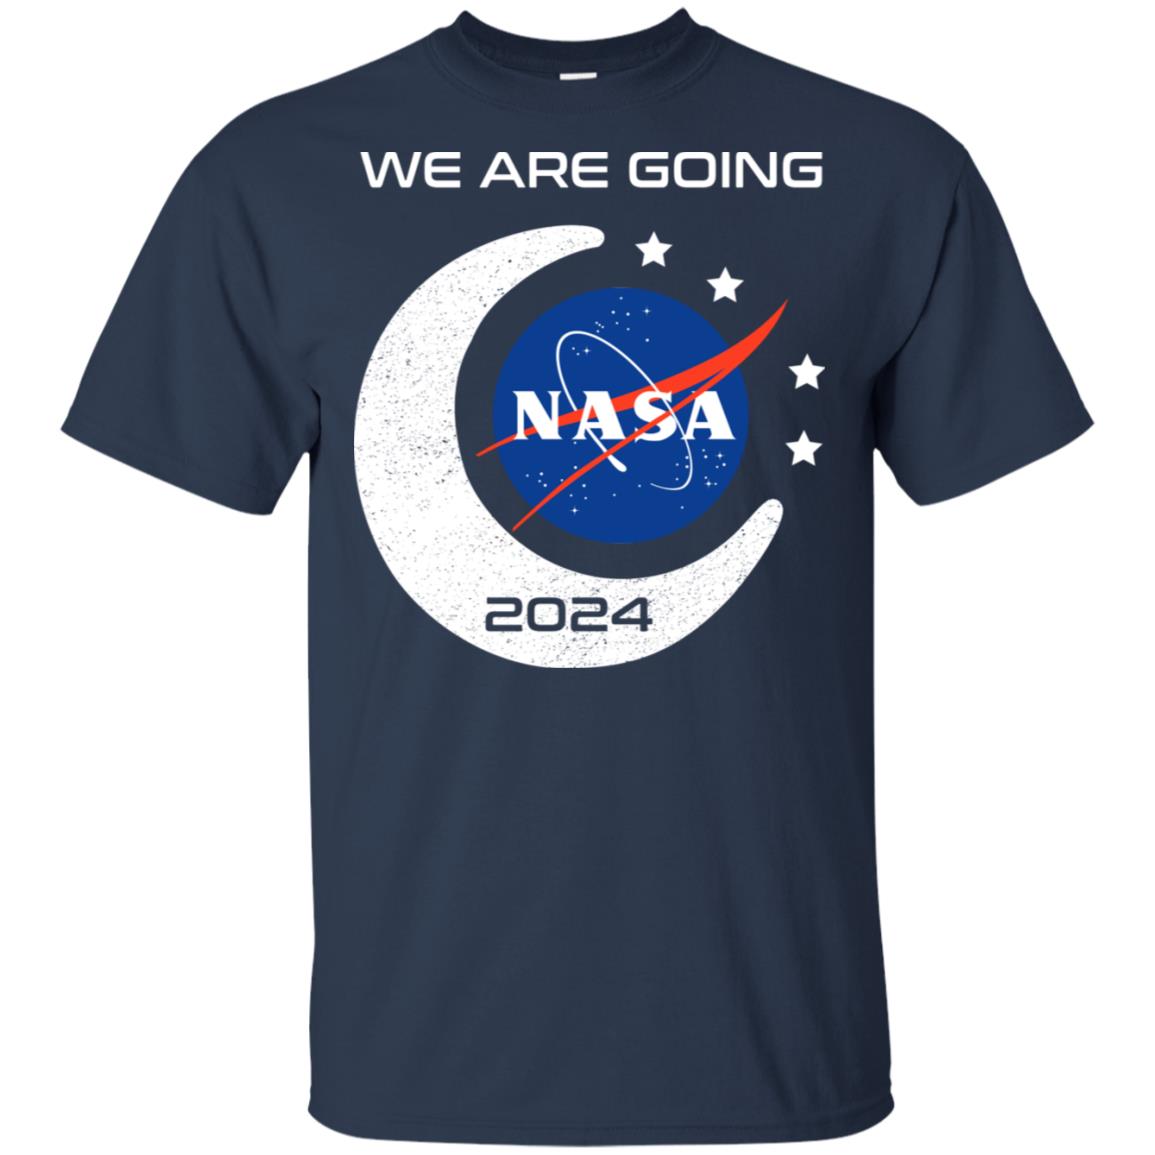 We are going Nasa 2024 hoodie, t shirt - RobinPlaceFabrics